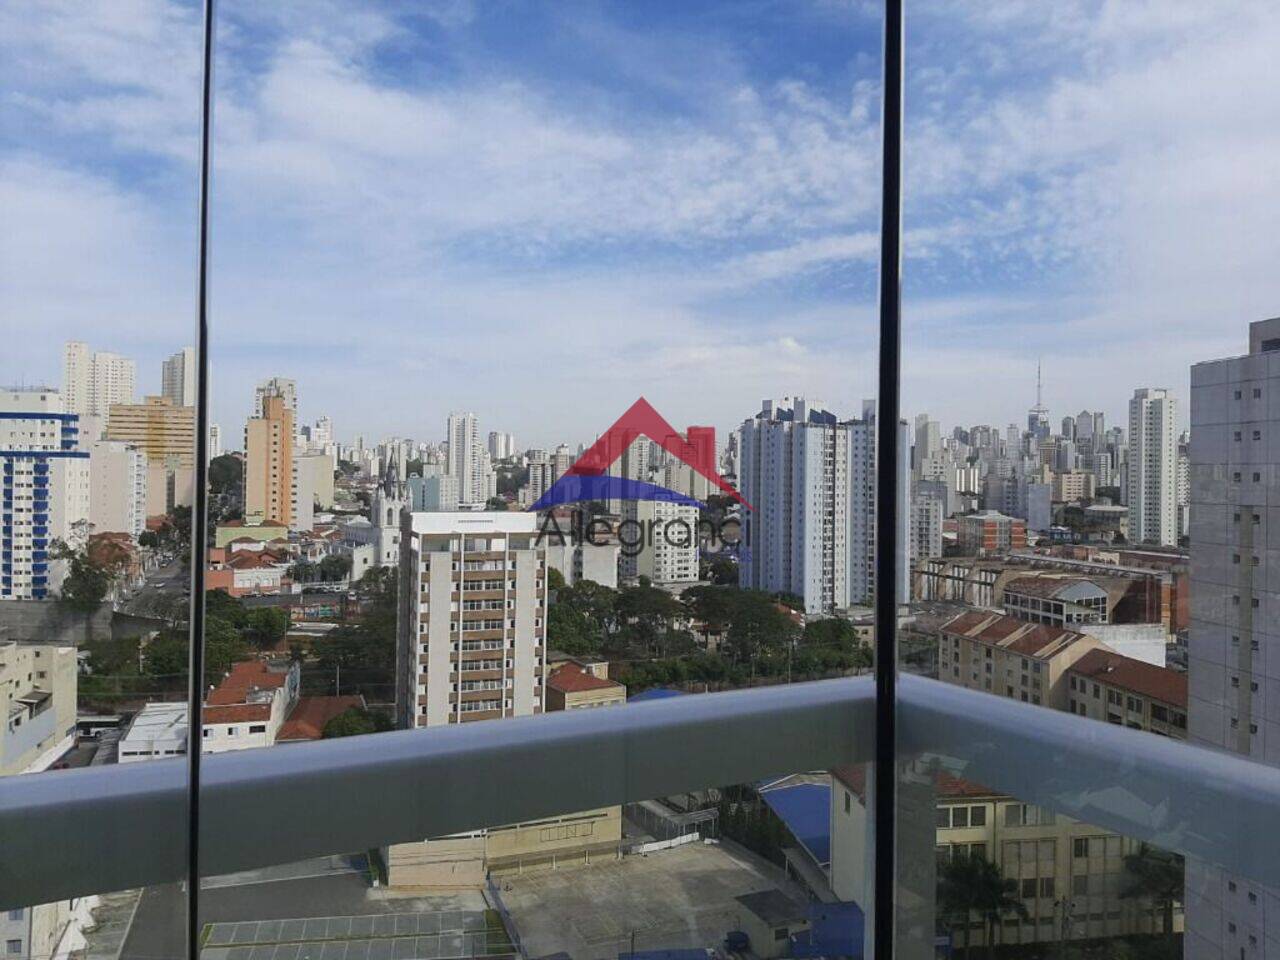 Apartamento Cambuci, São Paulo - SP